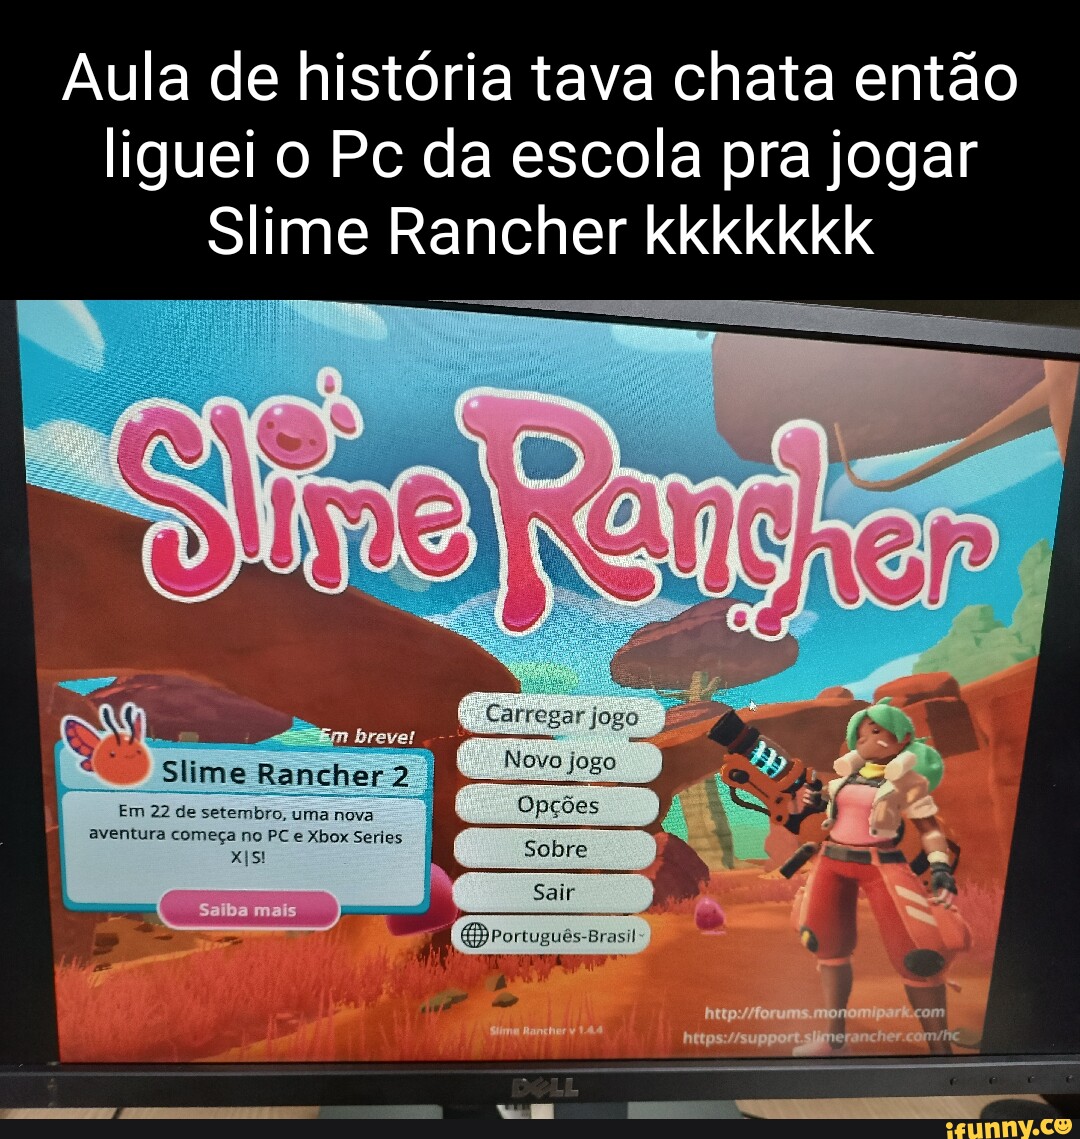 Slime Rancher 2 - O INÍCIO de GAMEPLAY, em Português PT-BR ( PC